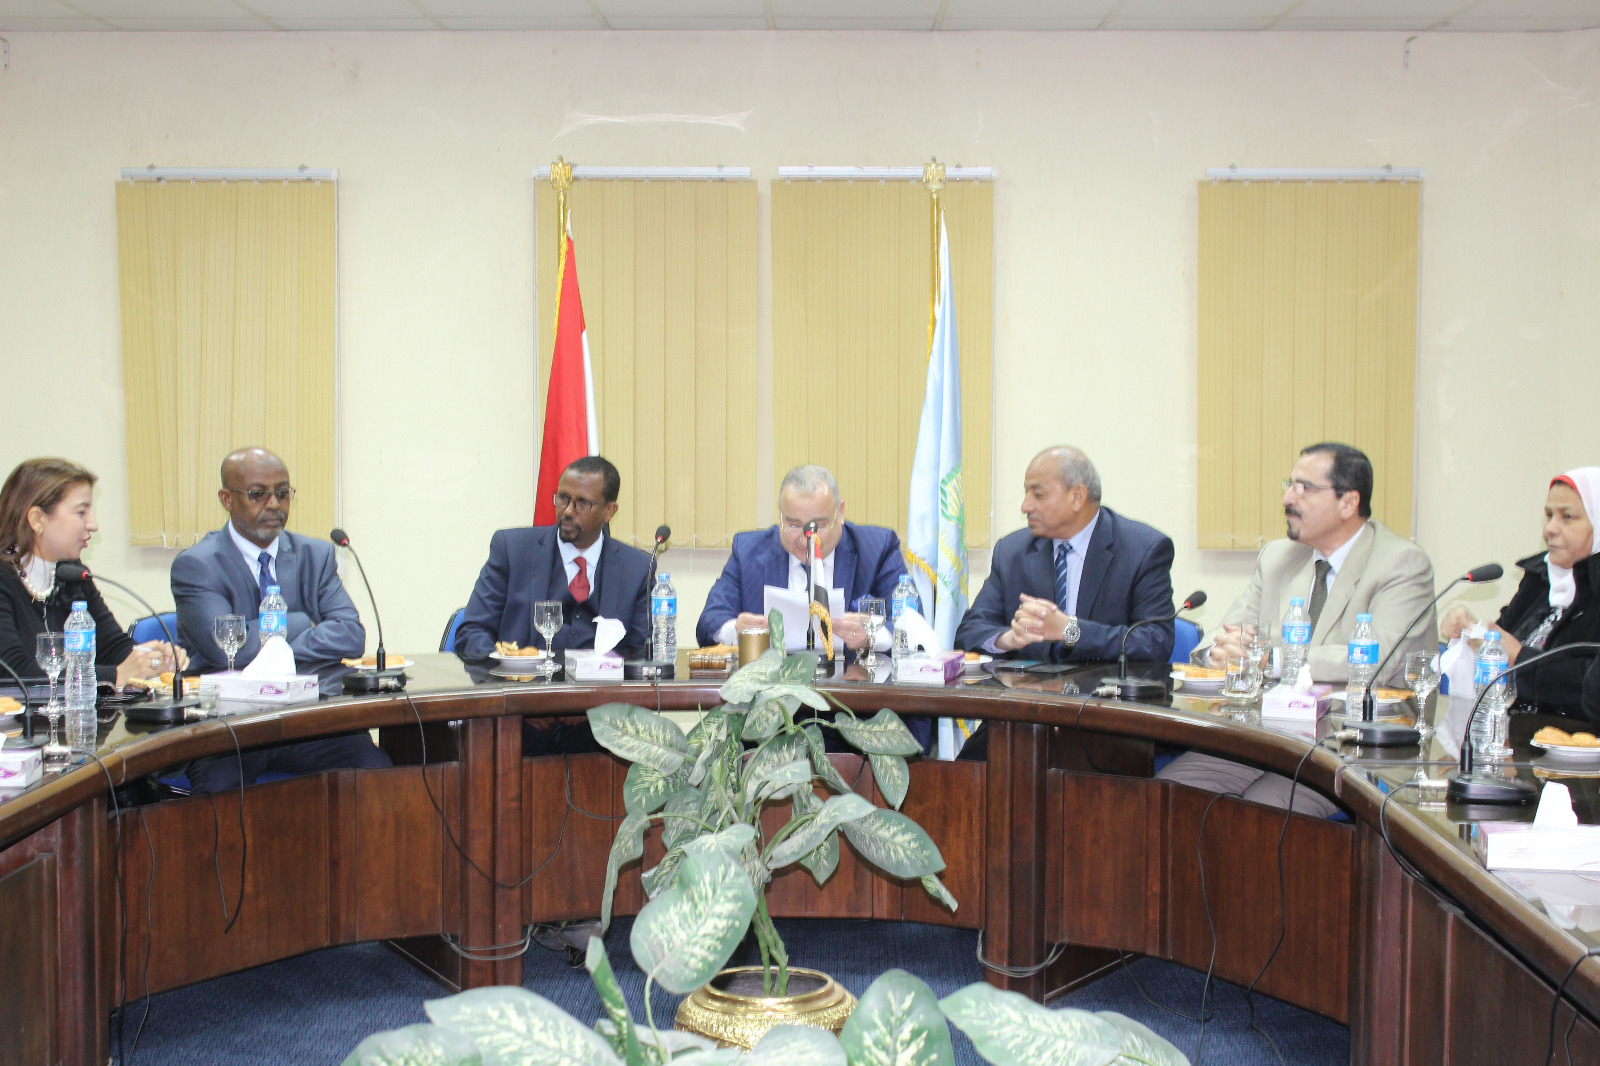 جانب من المناقشات بحضور وزير الصناعة والاستثمار بأرض الصومال